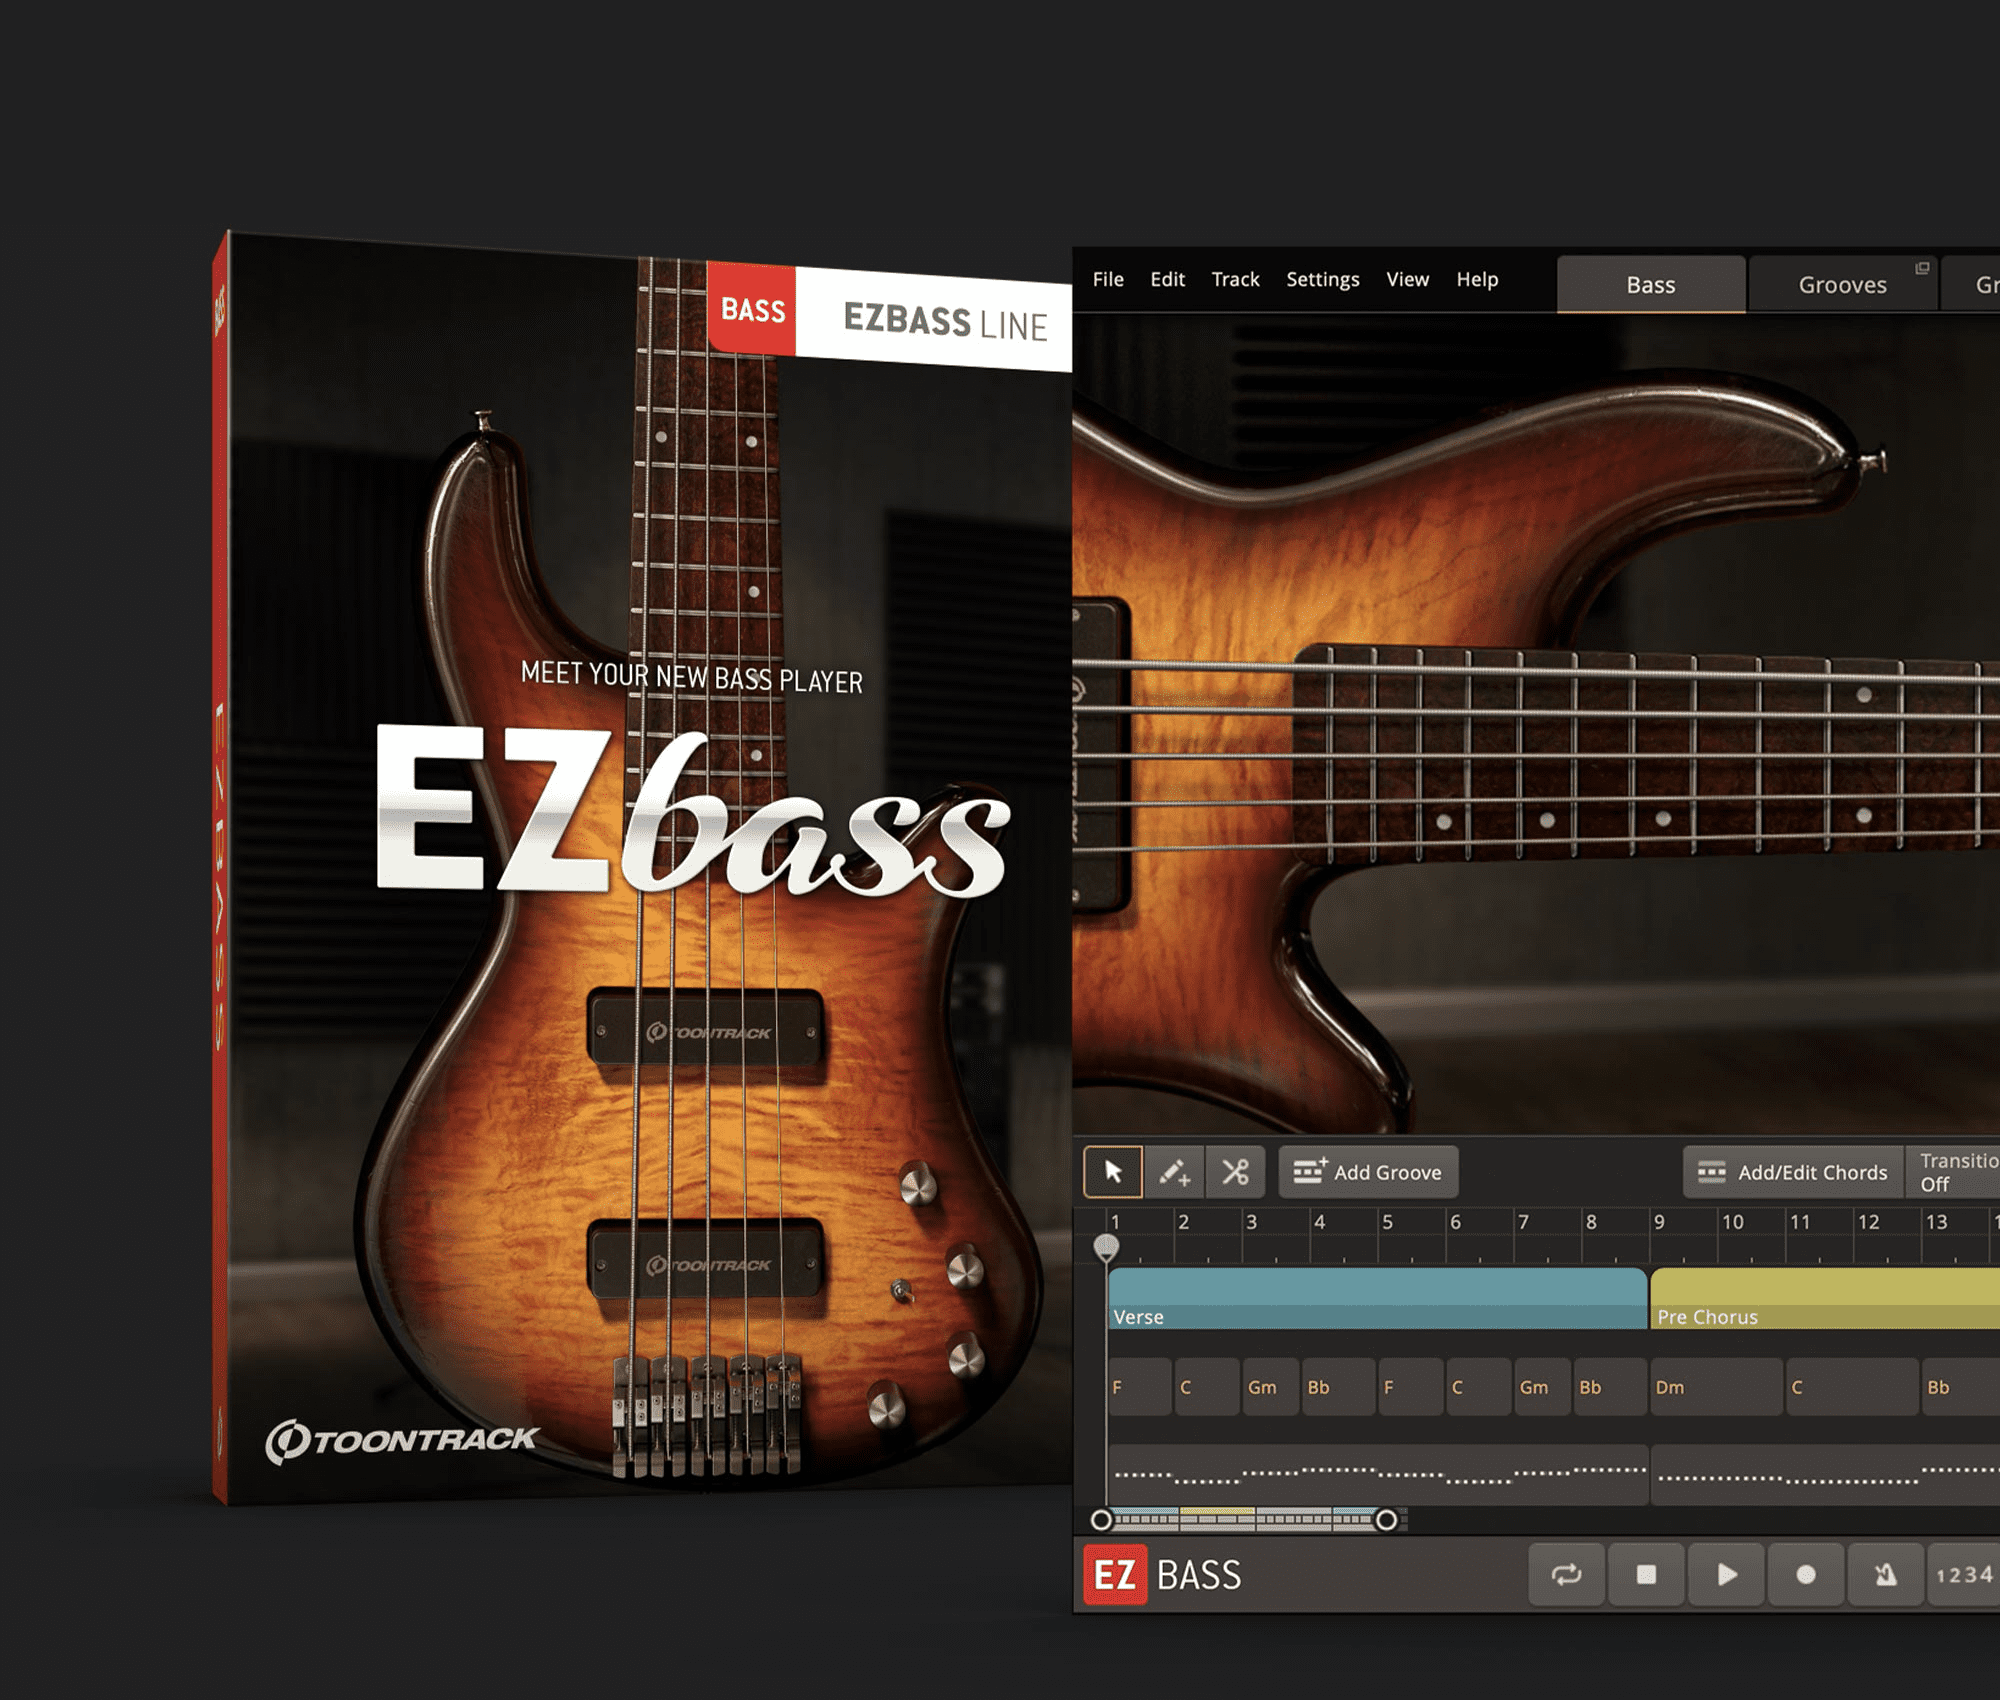 EZbass – Meet Your New Bass Player